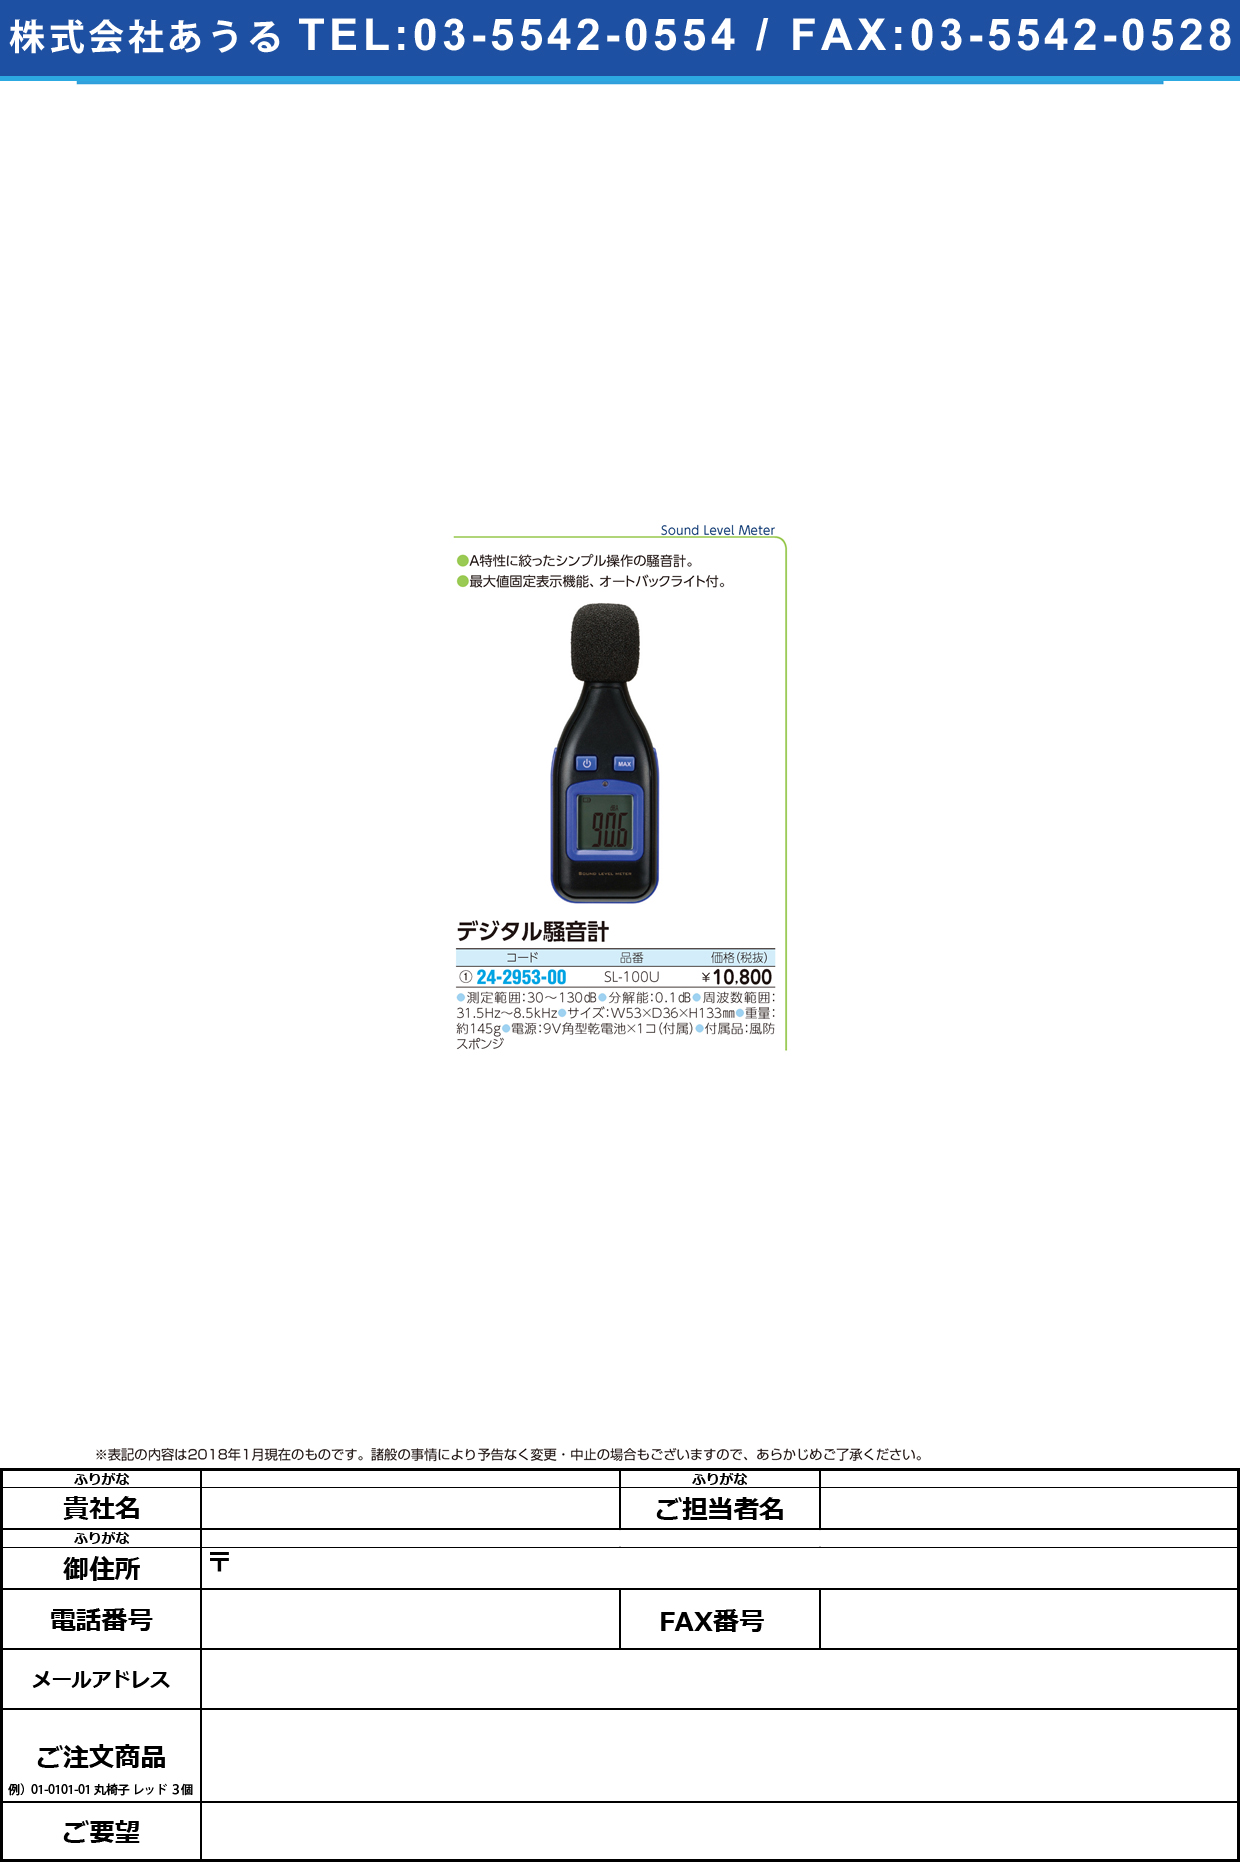 (24-2953-00)デジタル騒音計 SL-100U ﾃﾞｼﾞﾀﾙｿｳｵﾝｹｲ【1台単位】【2018年カタログ商品】